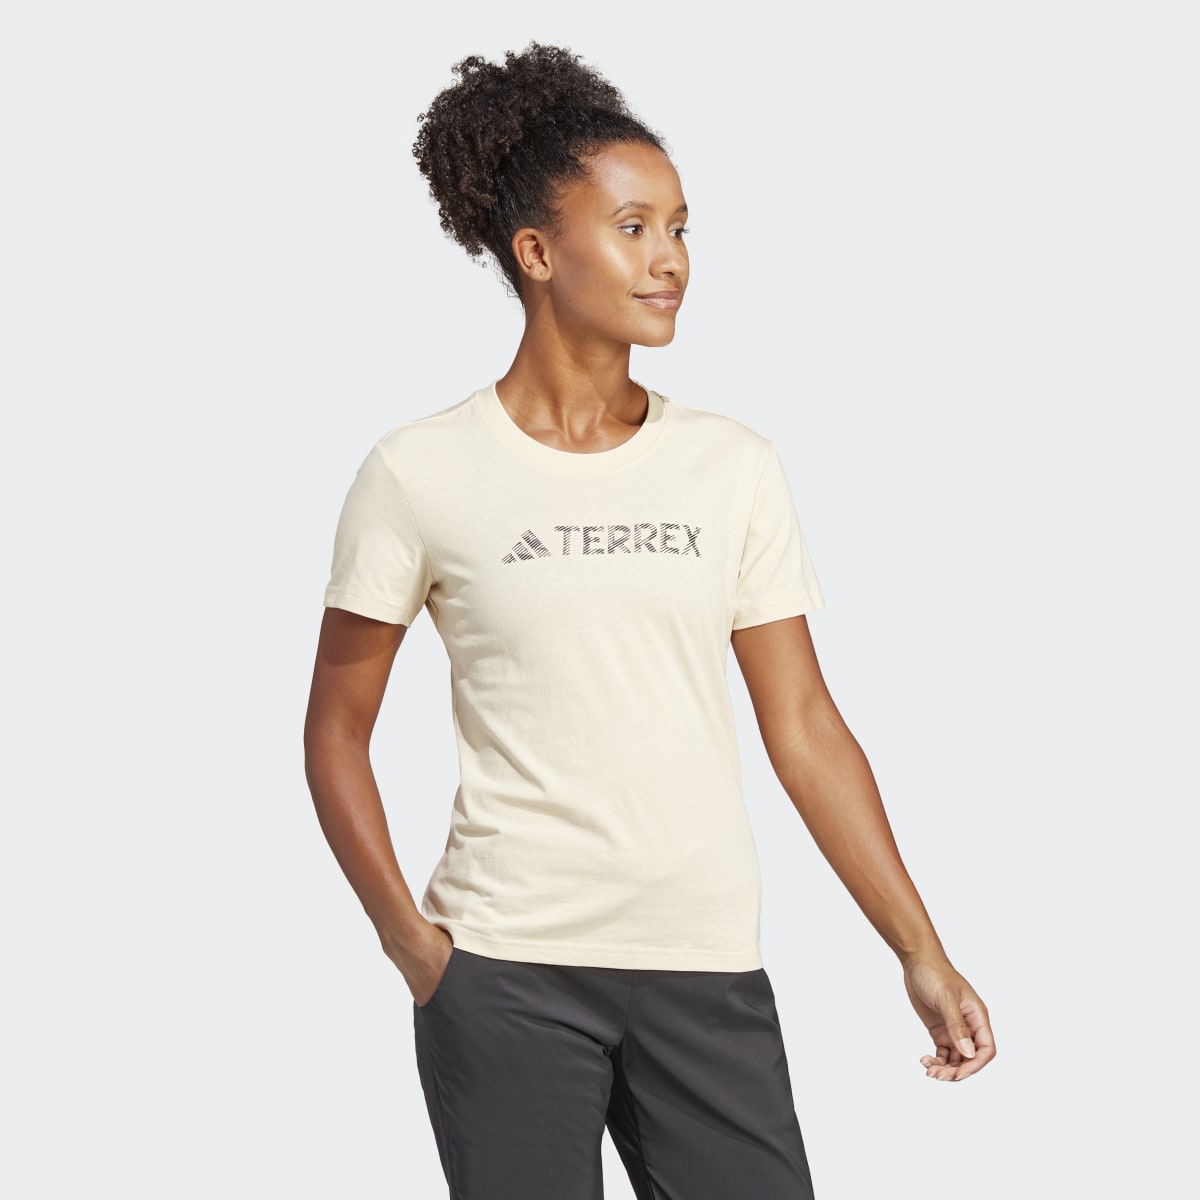 Adidas Terrex Classic Logo Tee. 4